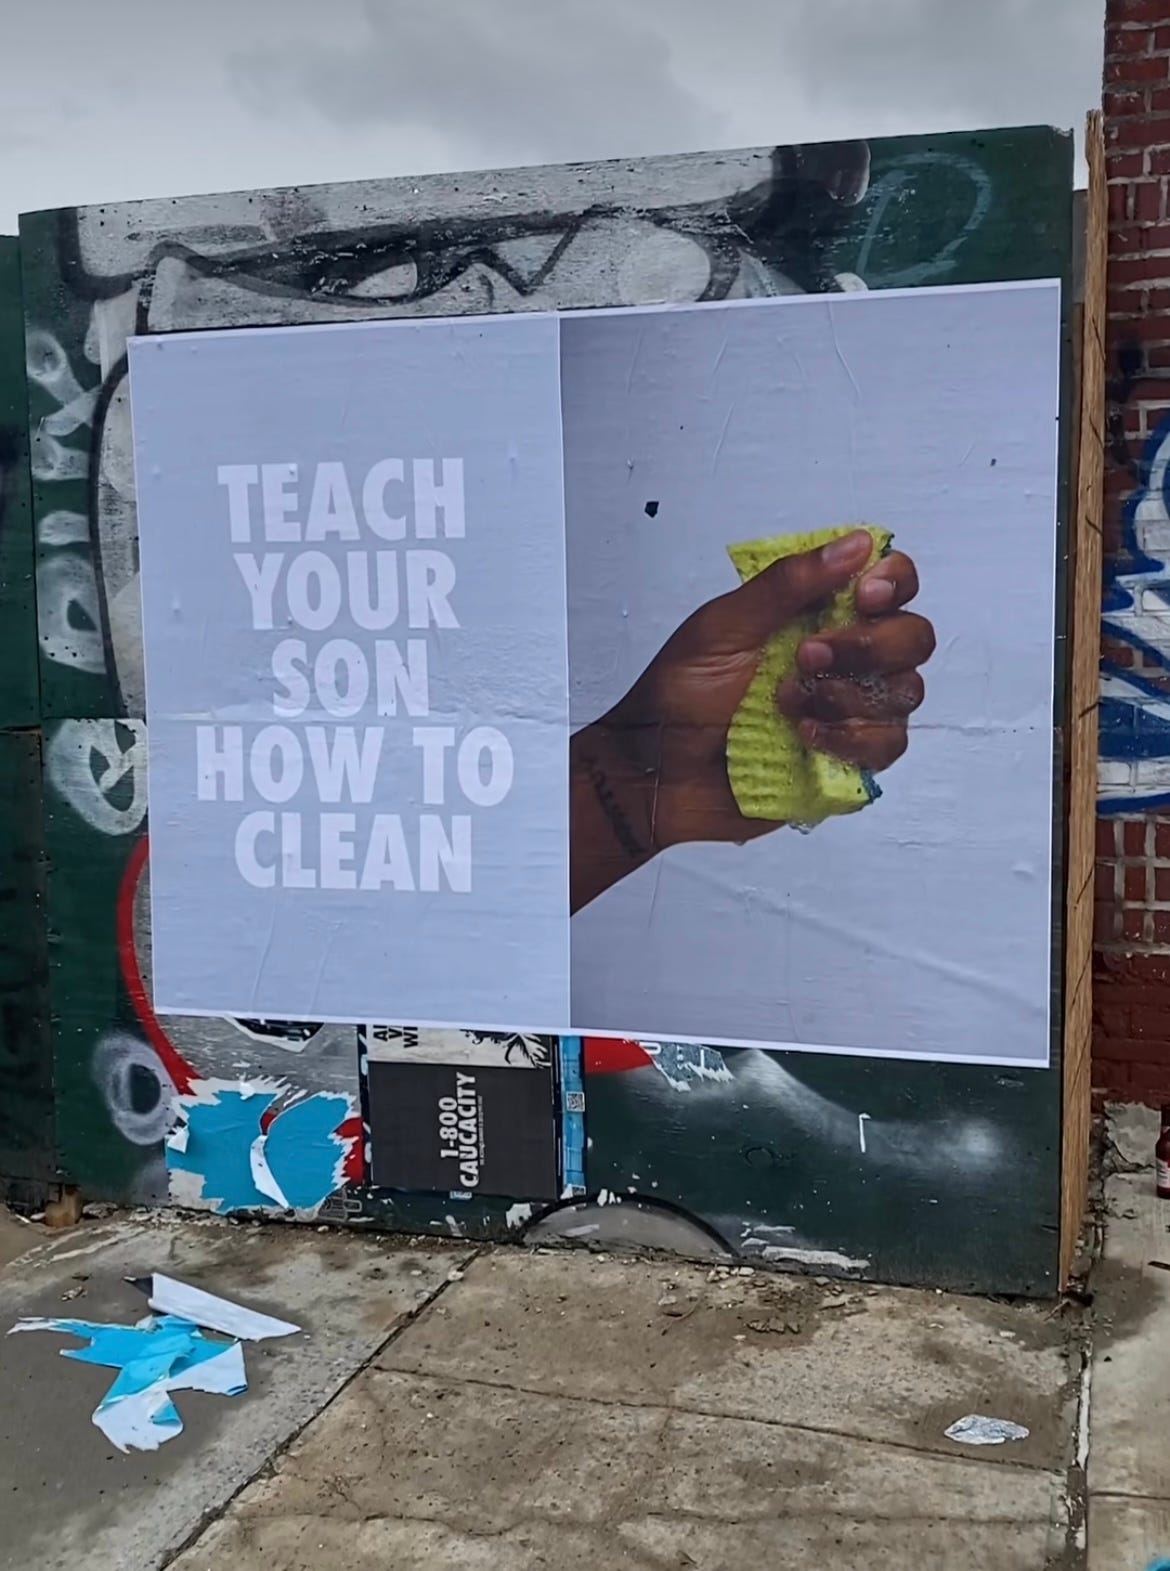 A sinistra "Teach you son how to clean" a destra l'immagine di una mano che strizza una spugna